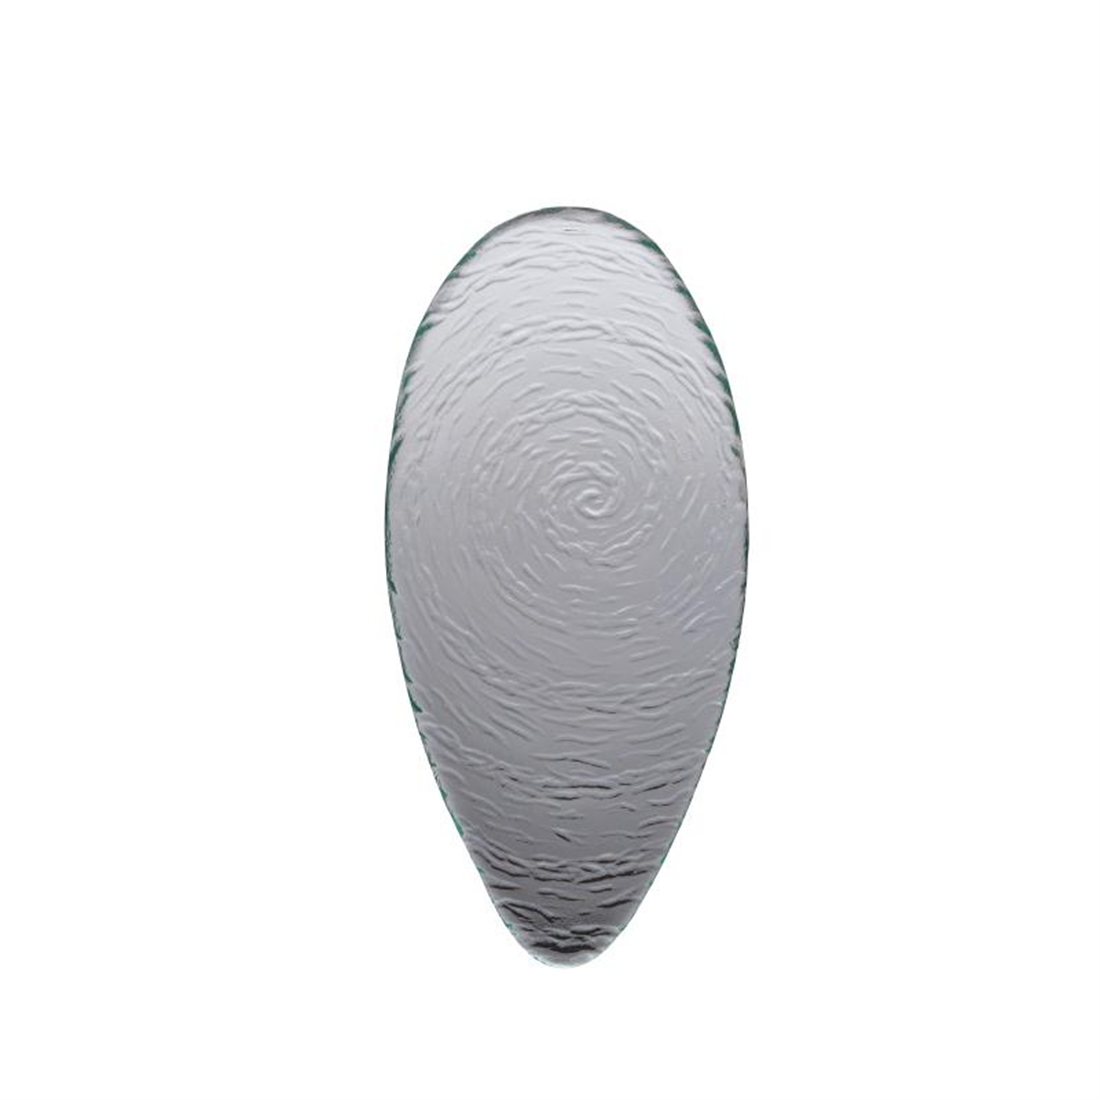 Steelite Scape Glass Oval Platters 300mm